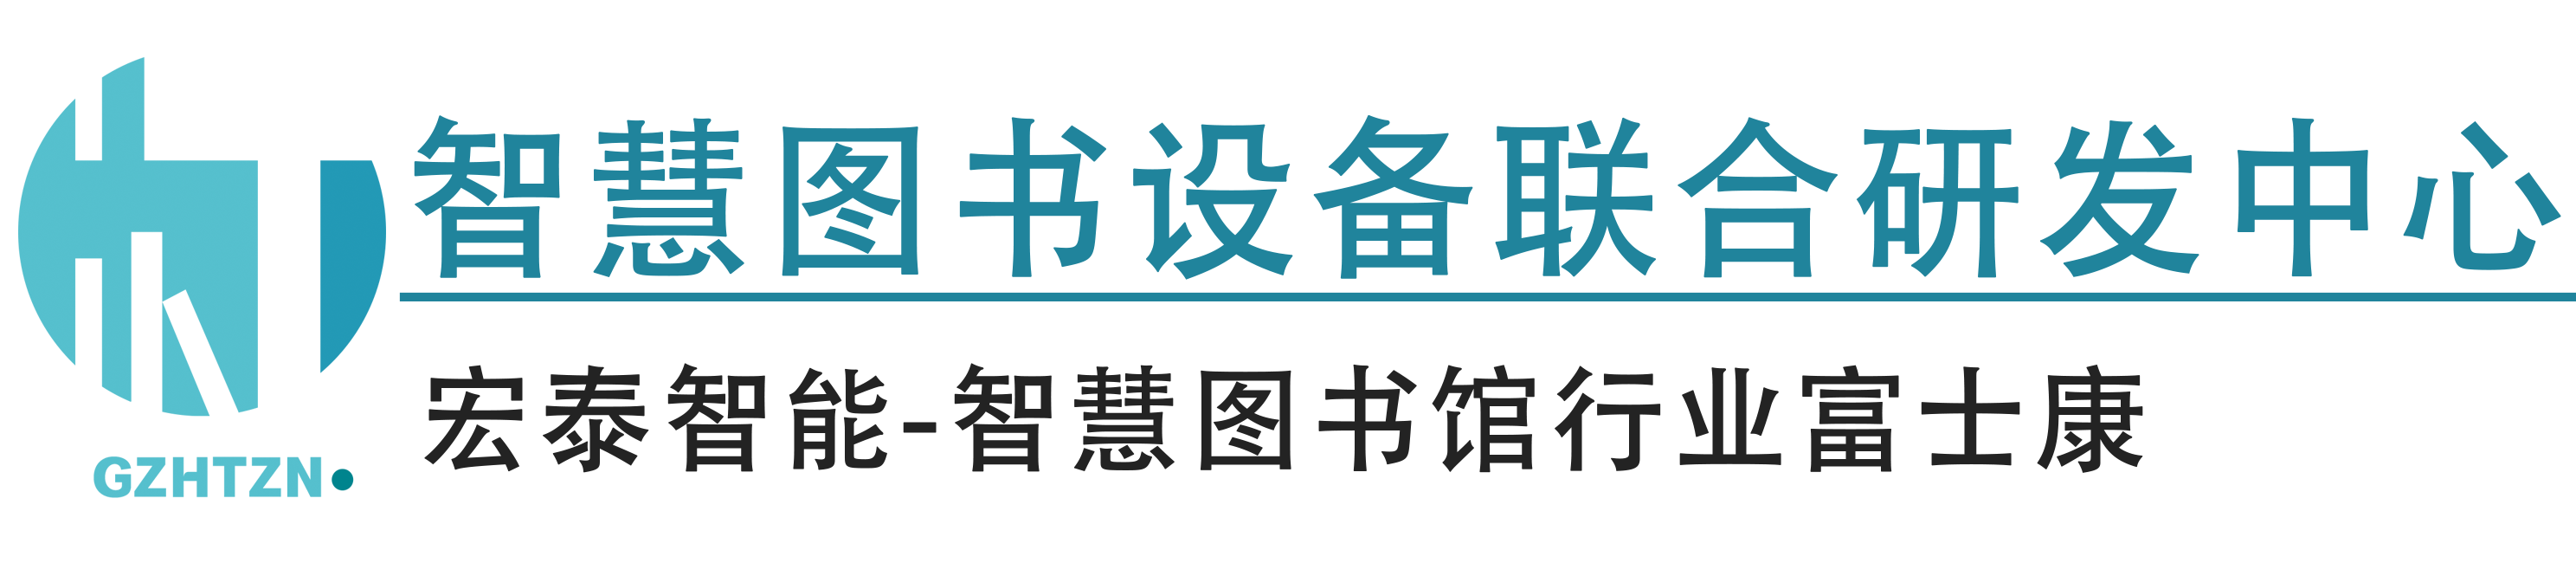 广州宏泰智能科技发展有限公司